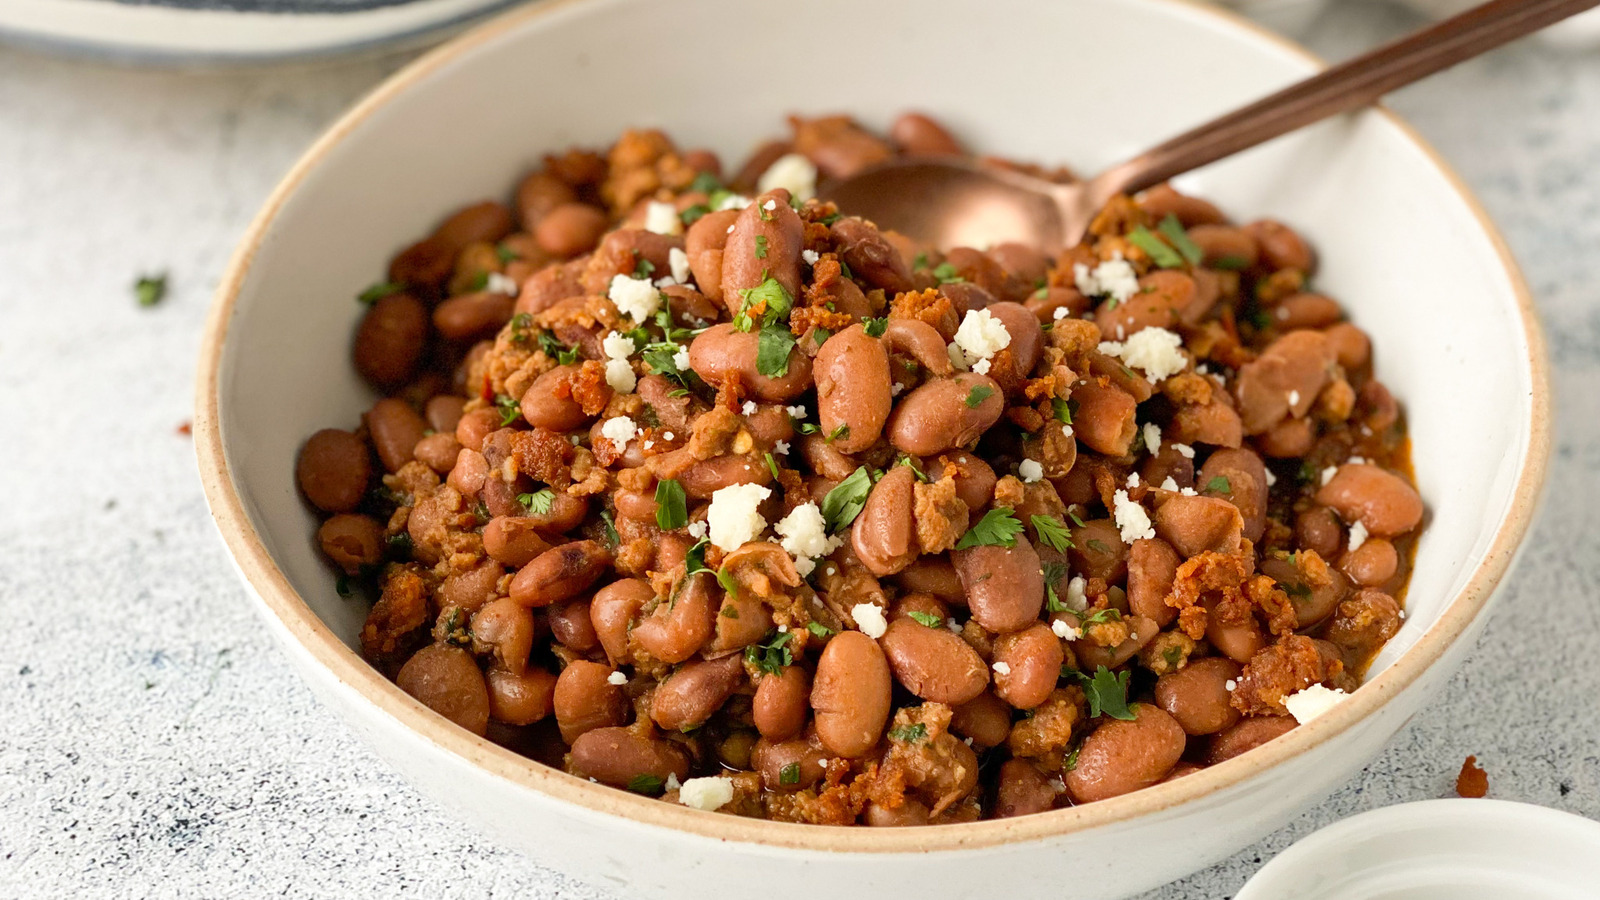 Share more than 112 bag of pinto beans best - kidsdream.edu.vn